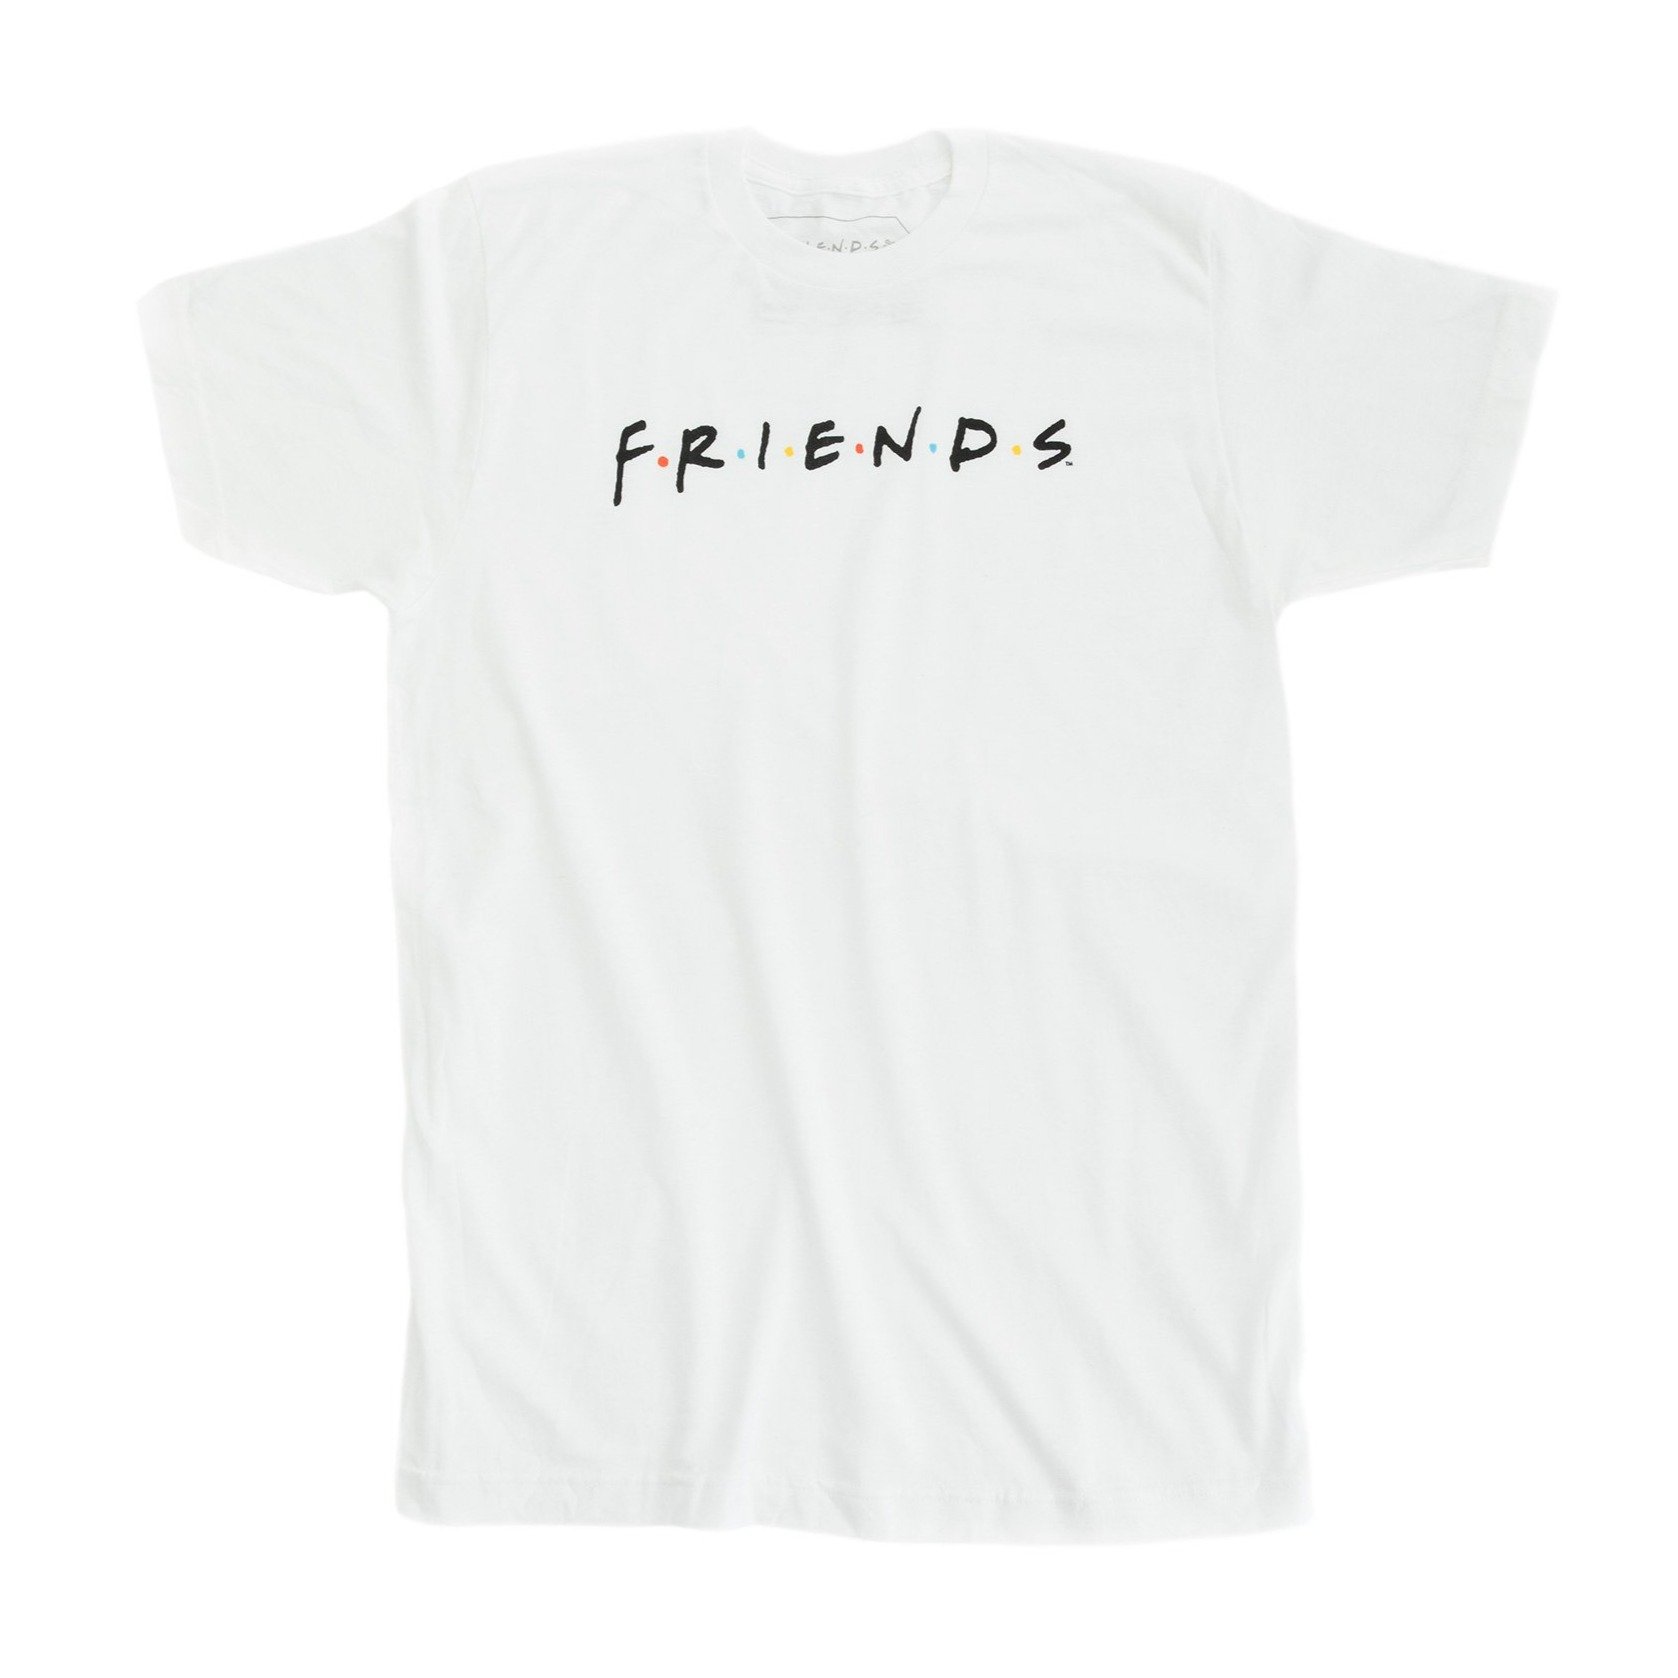 FRIENDS2327 - Friends TV Show Shop